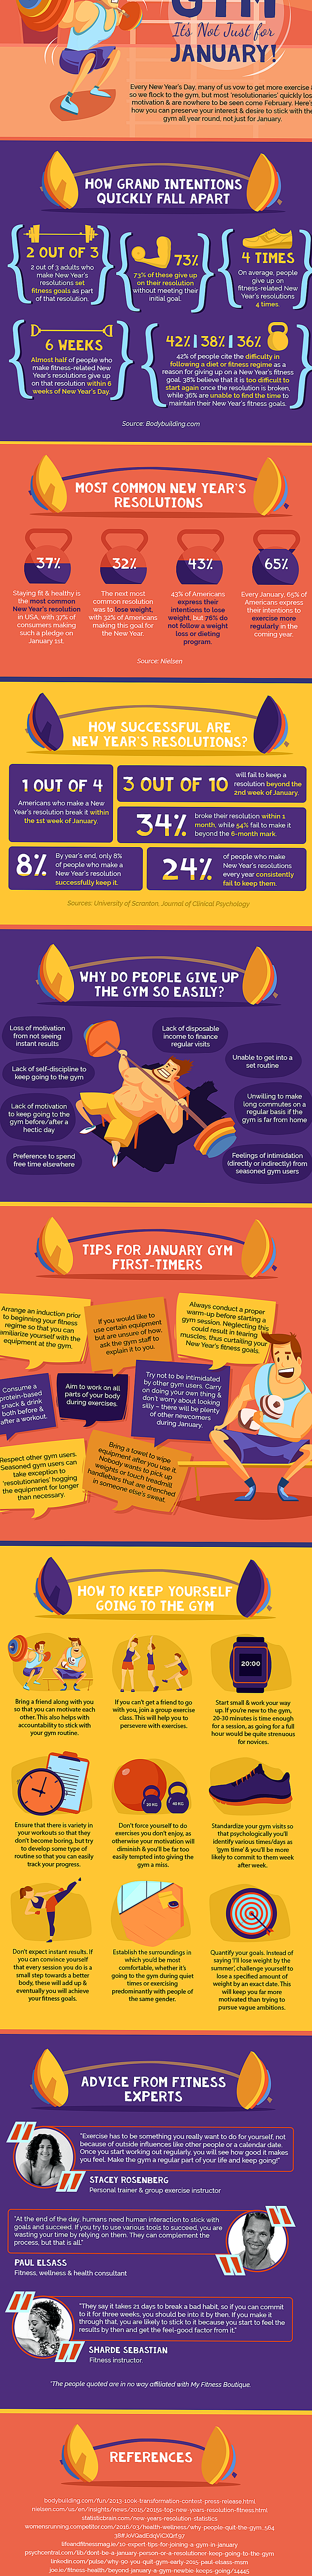 Infografica: suggerimenti per aiutarvi ad adempiere alle risoluzioni del nuovo anno legate al fitness